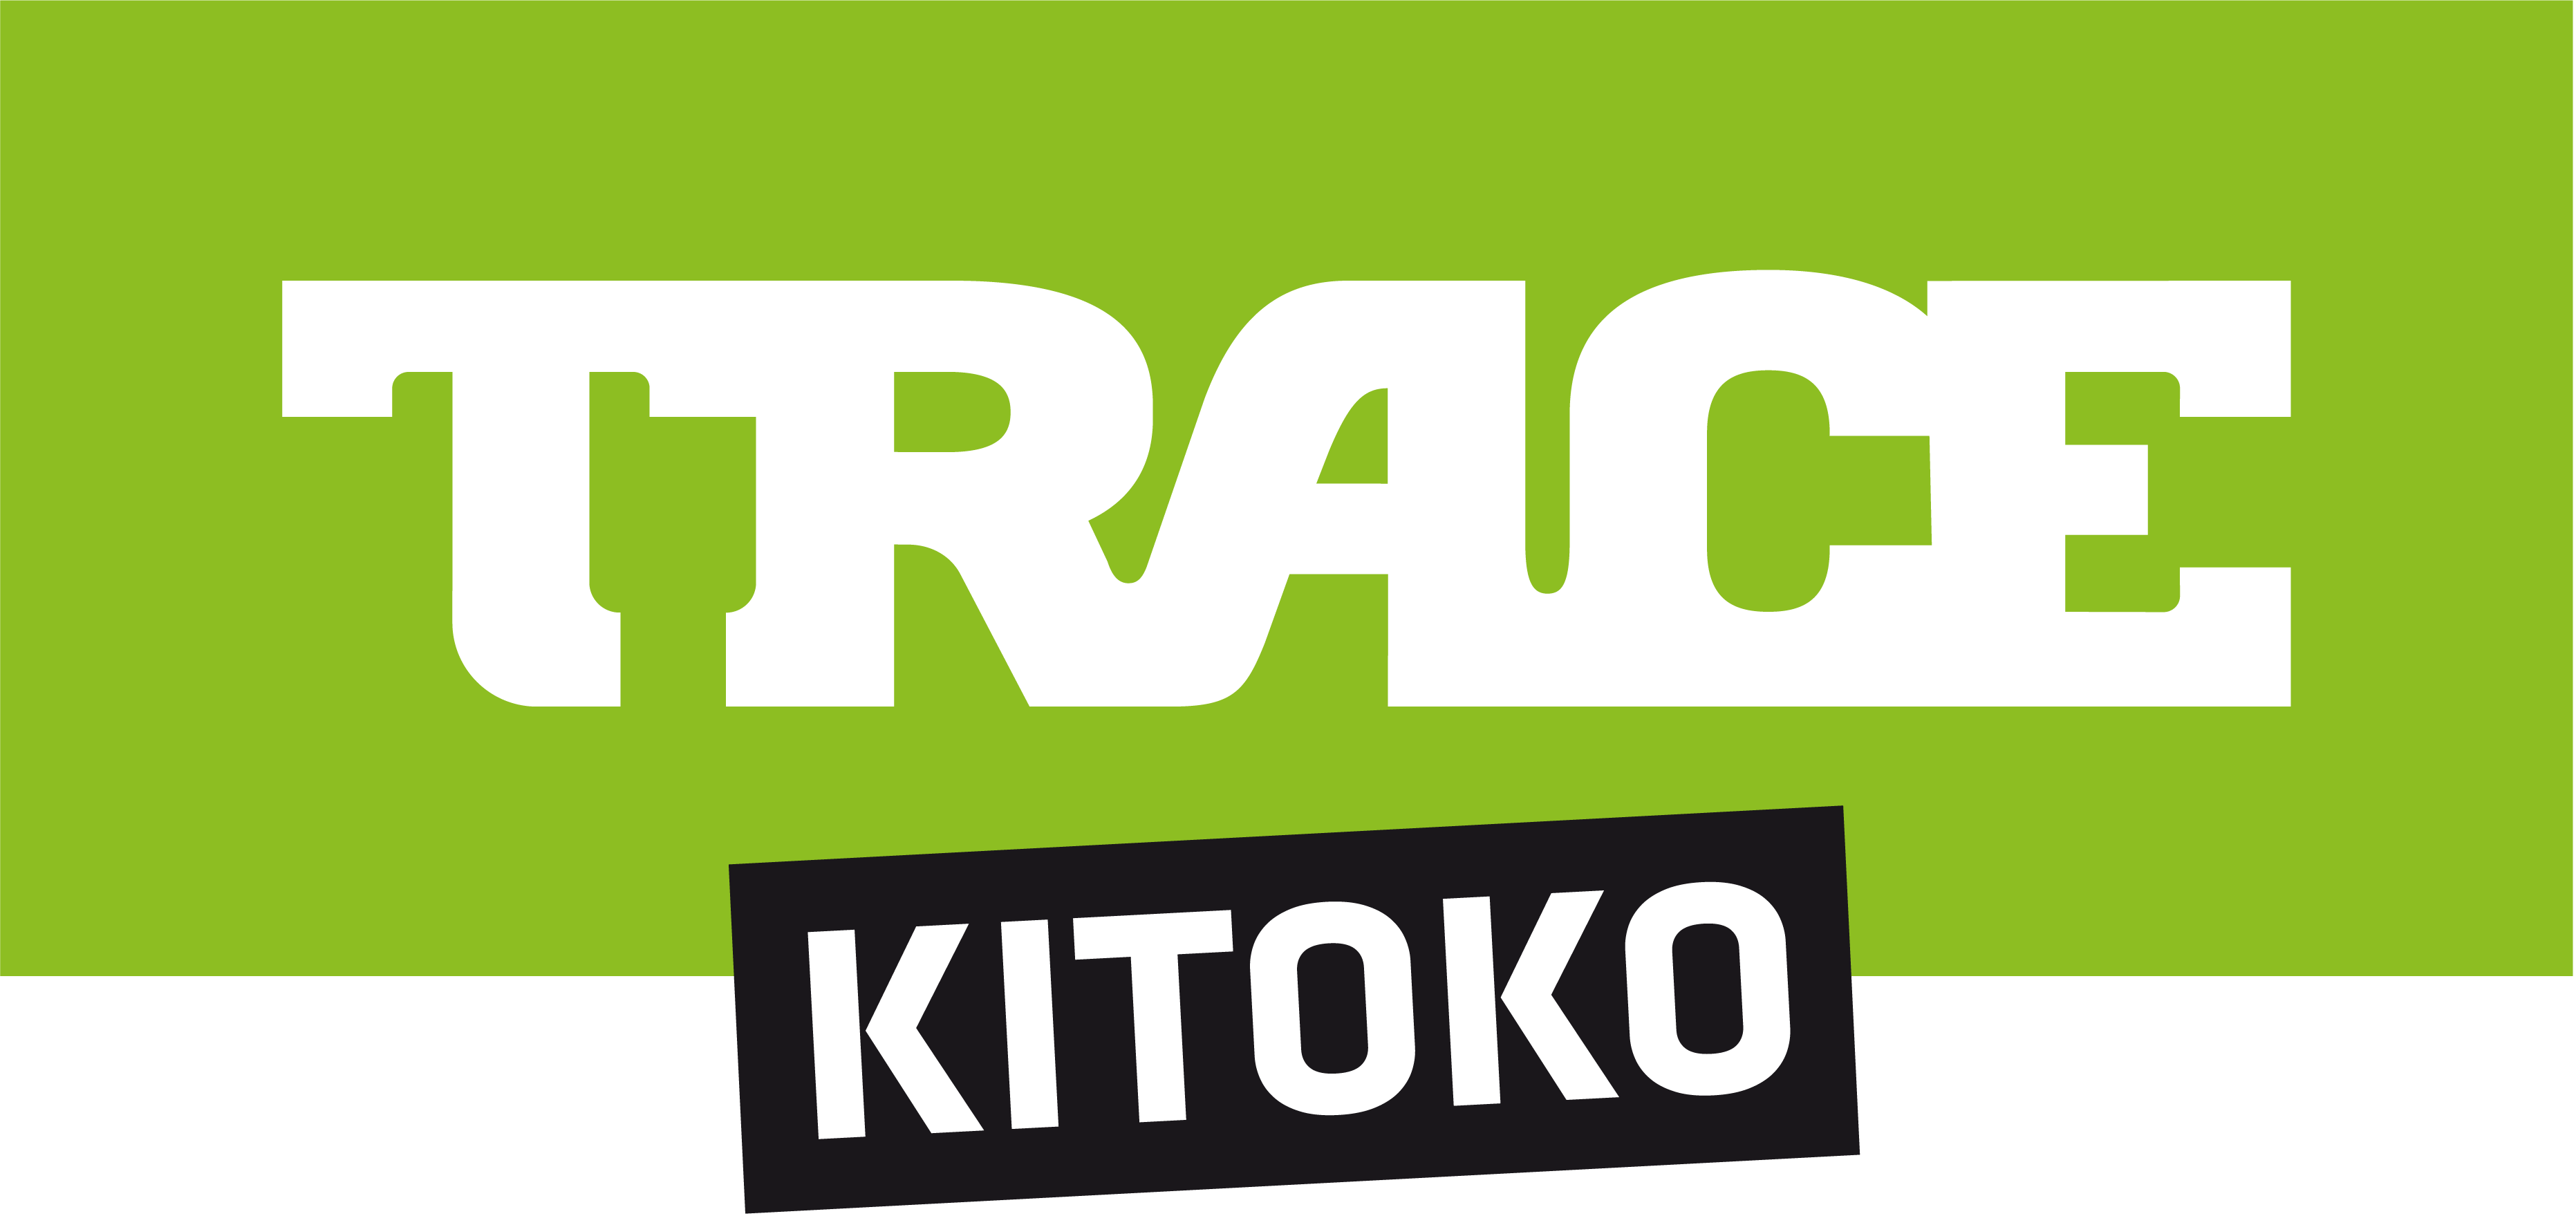 TRACE-logo-kitoko-01-1.png